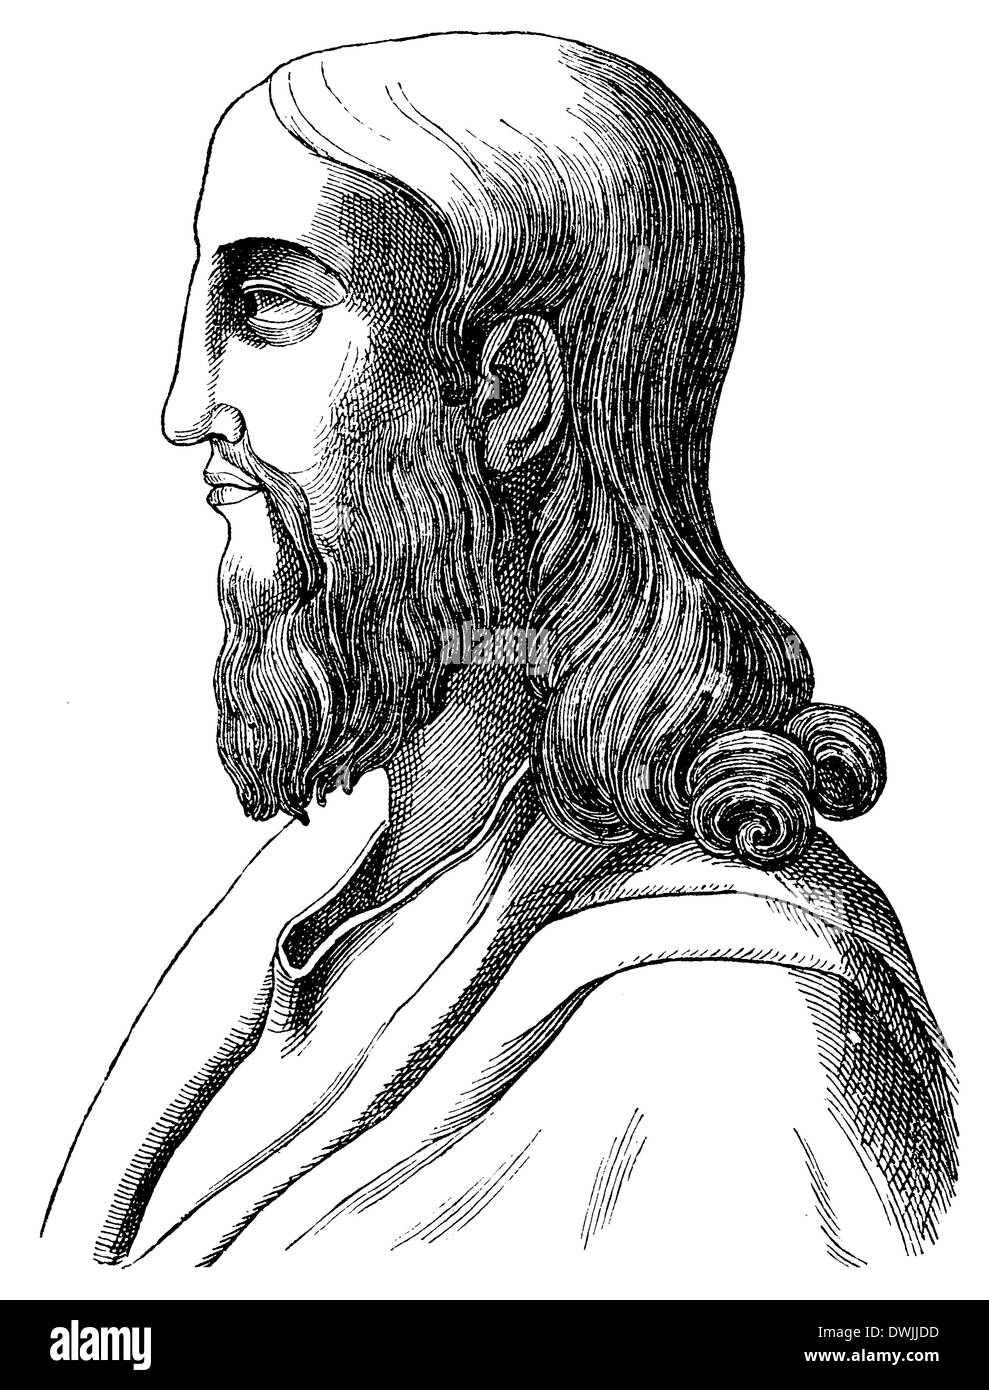 Immagine bizantina di Cristo a partire dal VI secolo Foto Stock